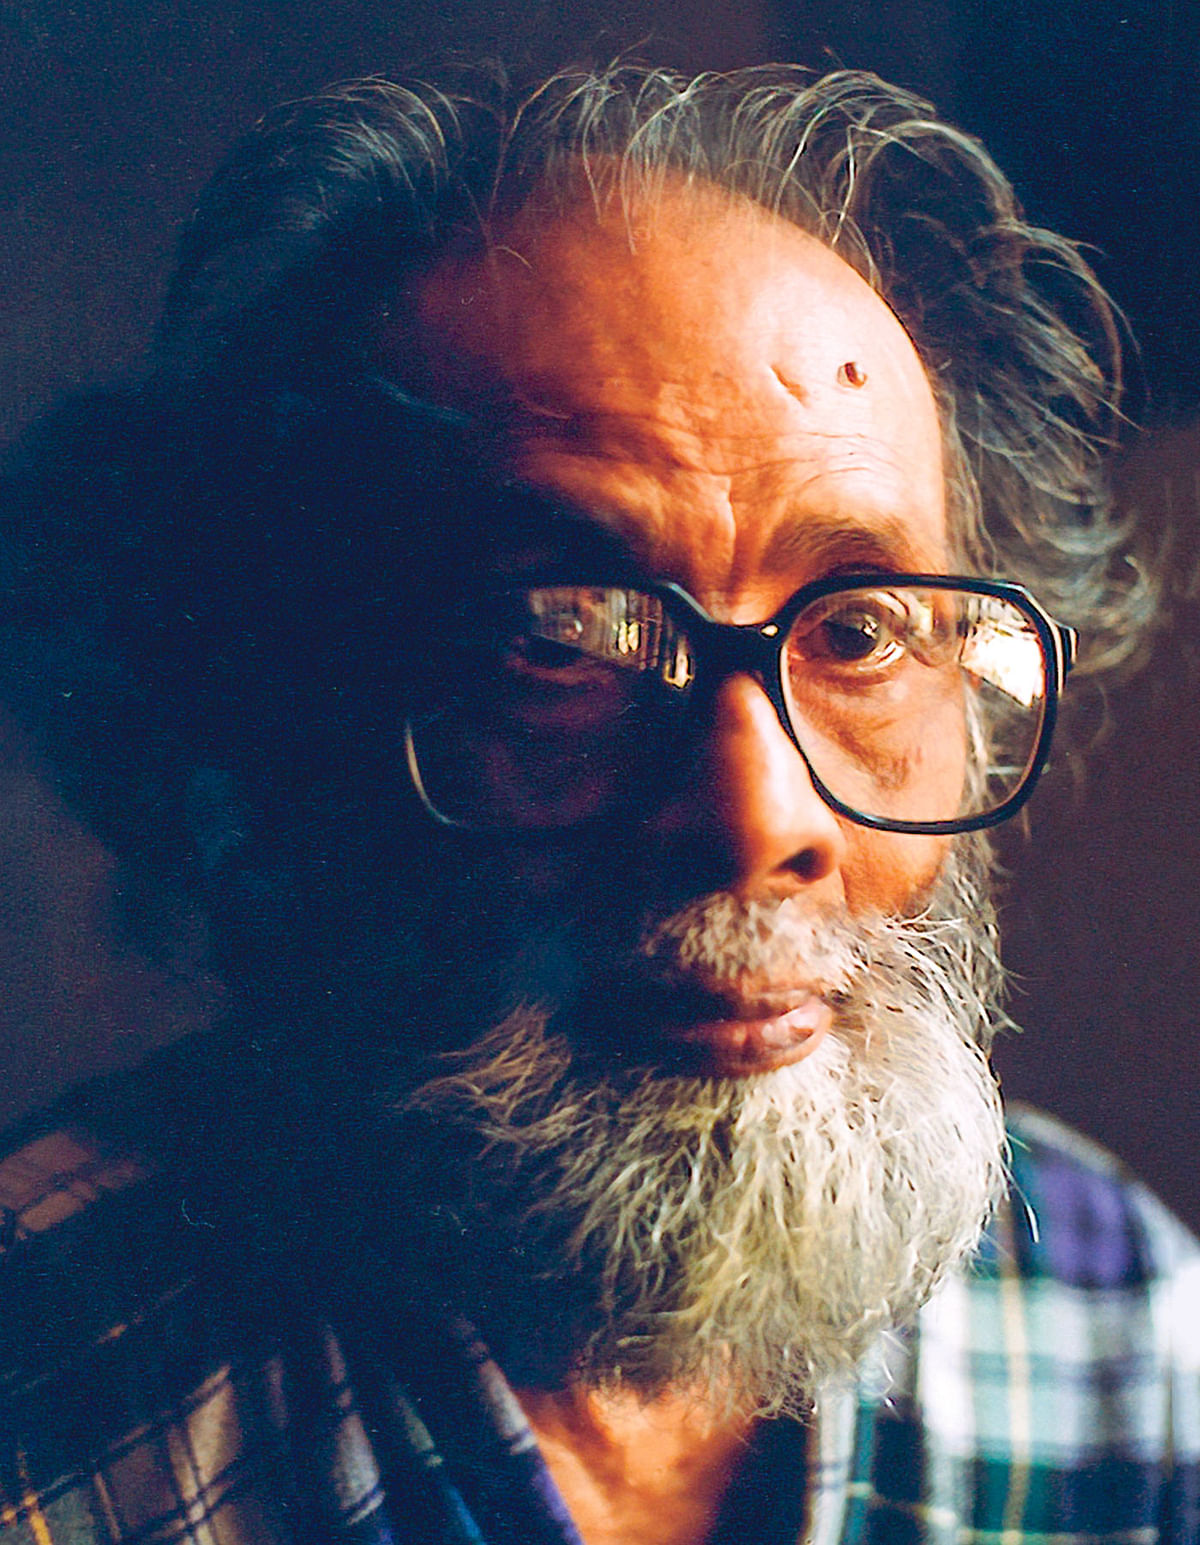 শওকত ওসমান (২ জানুয়ারি ১৯১৭-১৪ মে ১৯৯৮), ছবি: নাসির আলী মামুন